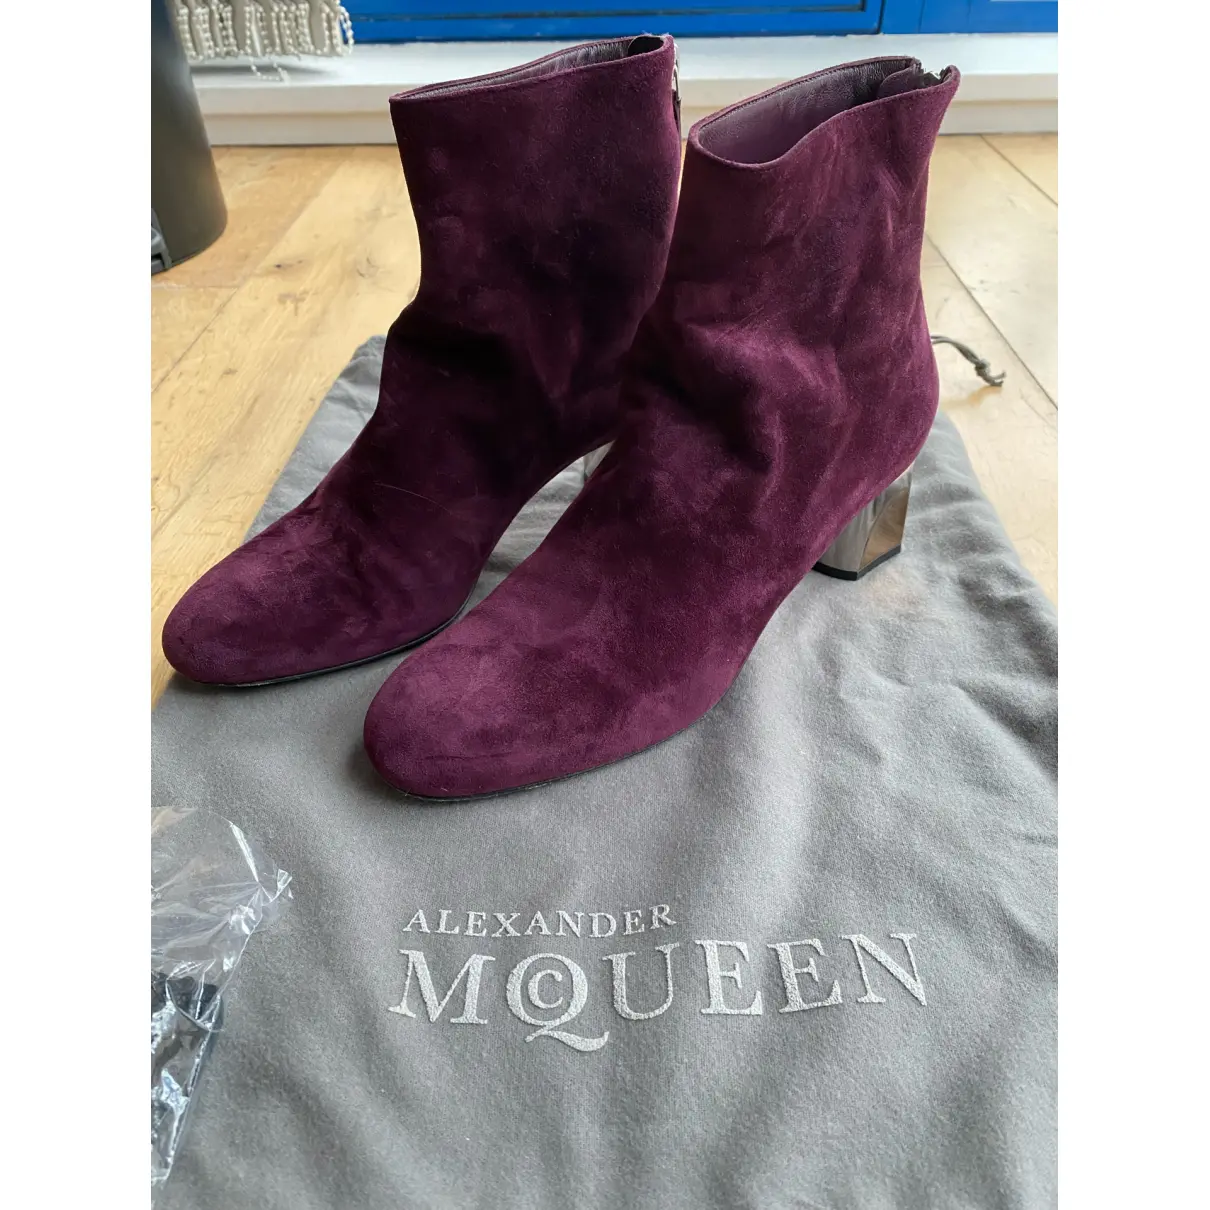 Buy Alexander McQueen Ankle boots online